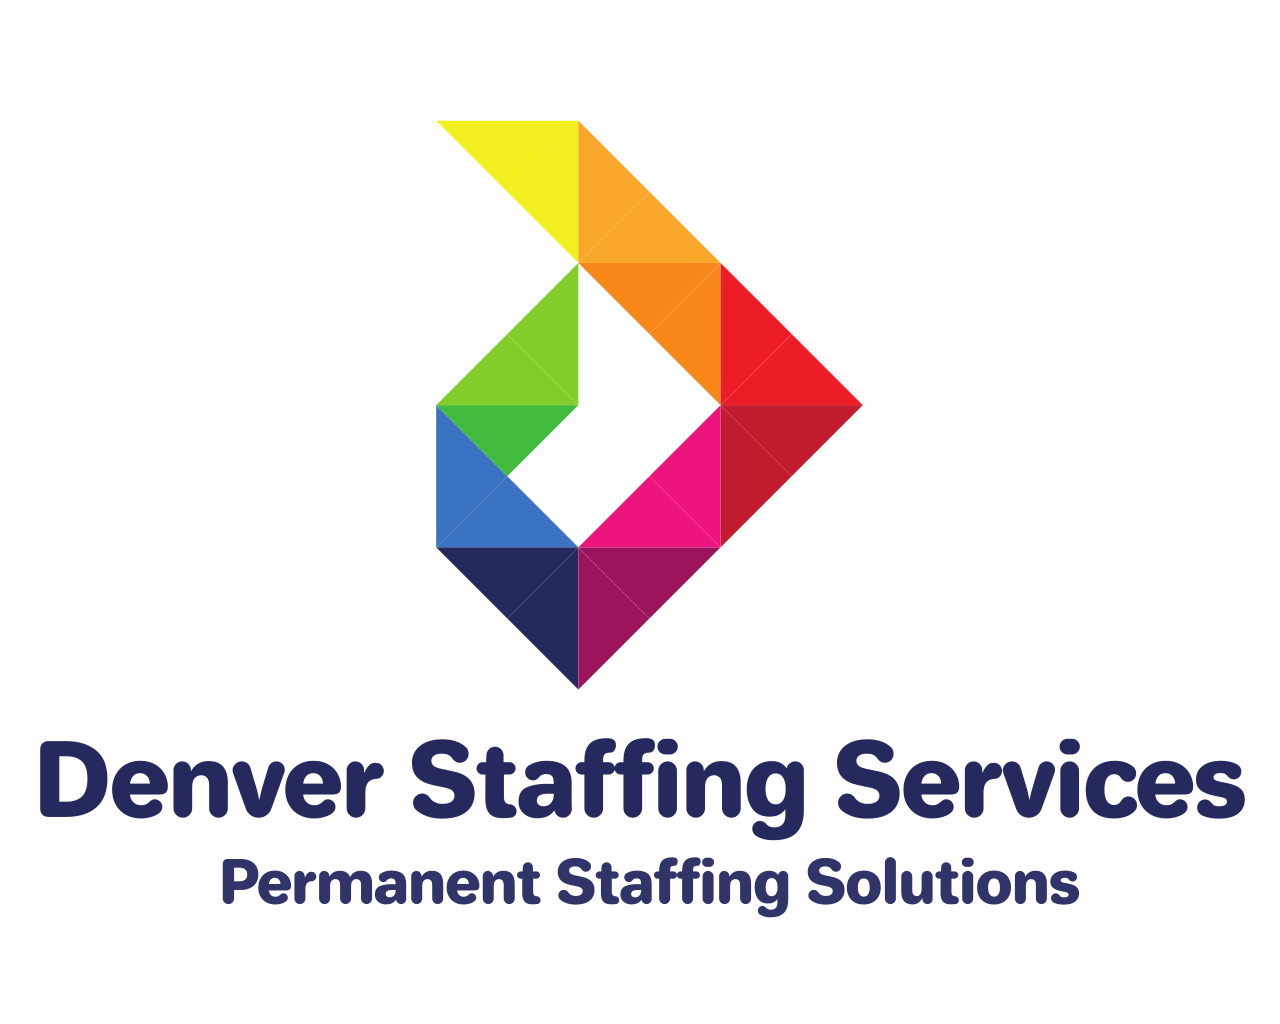 Denver Staffing Services LLC